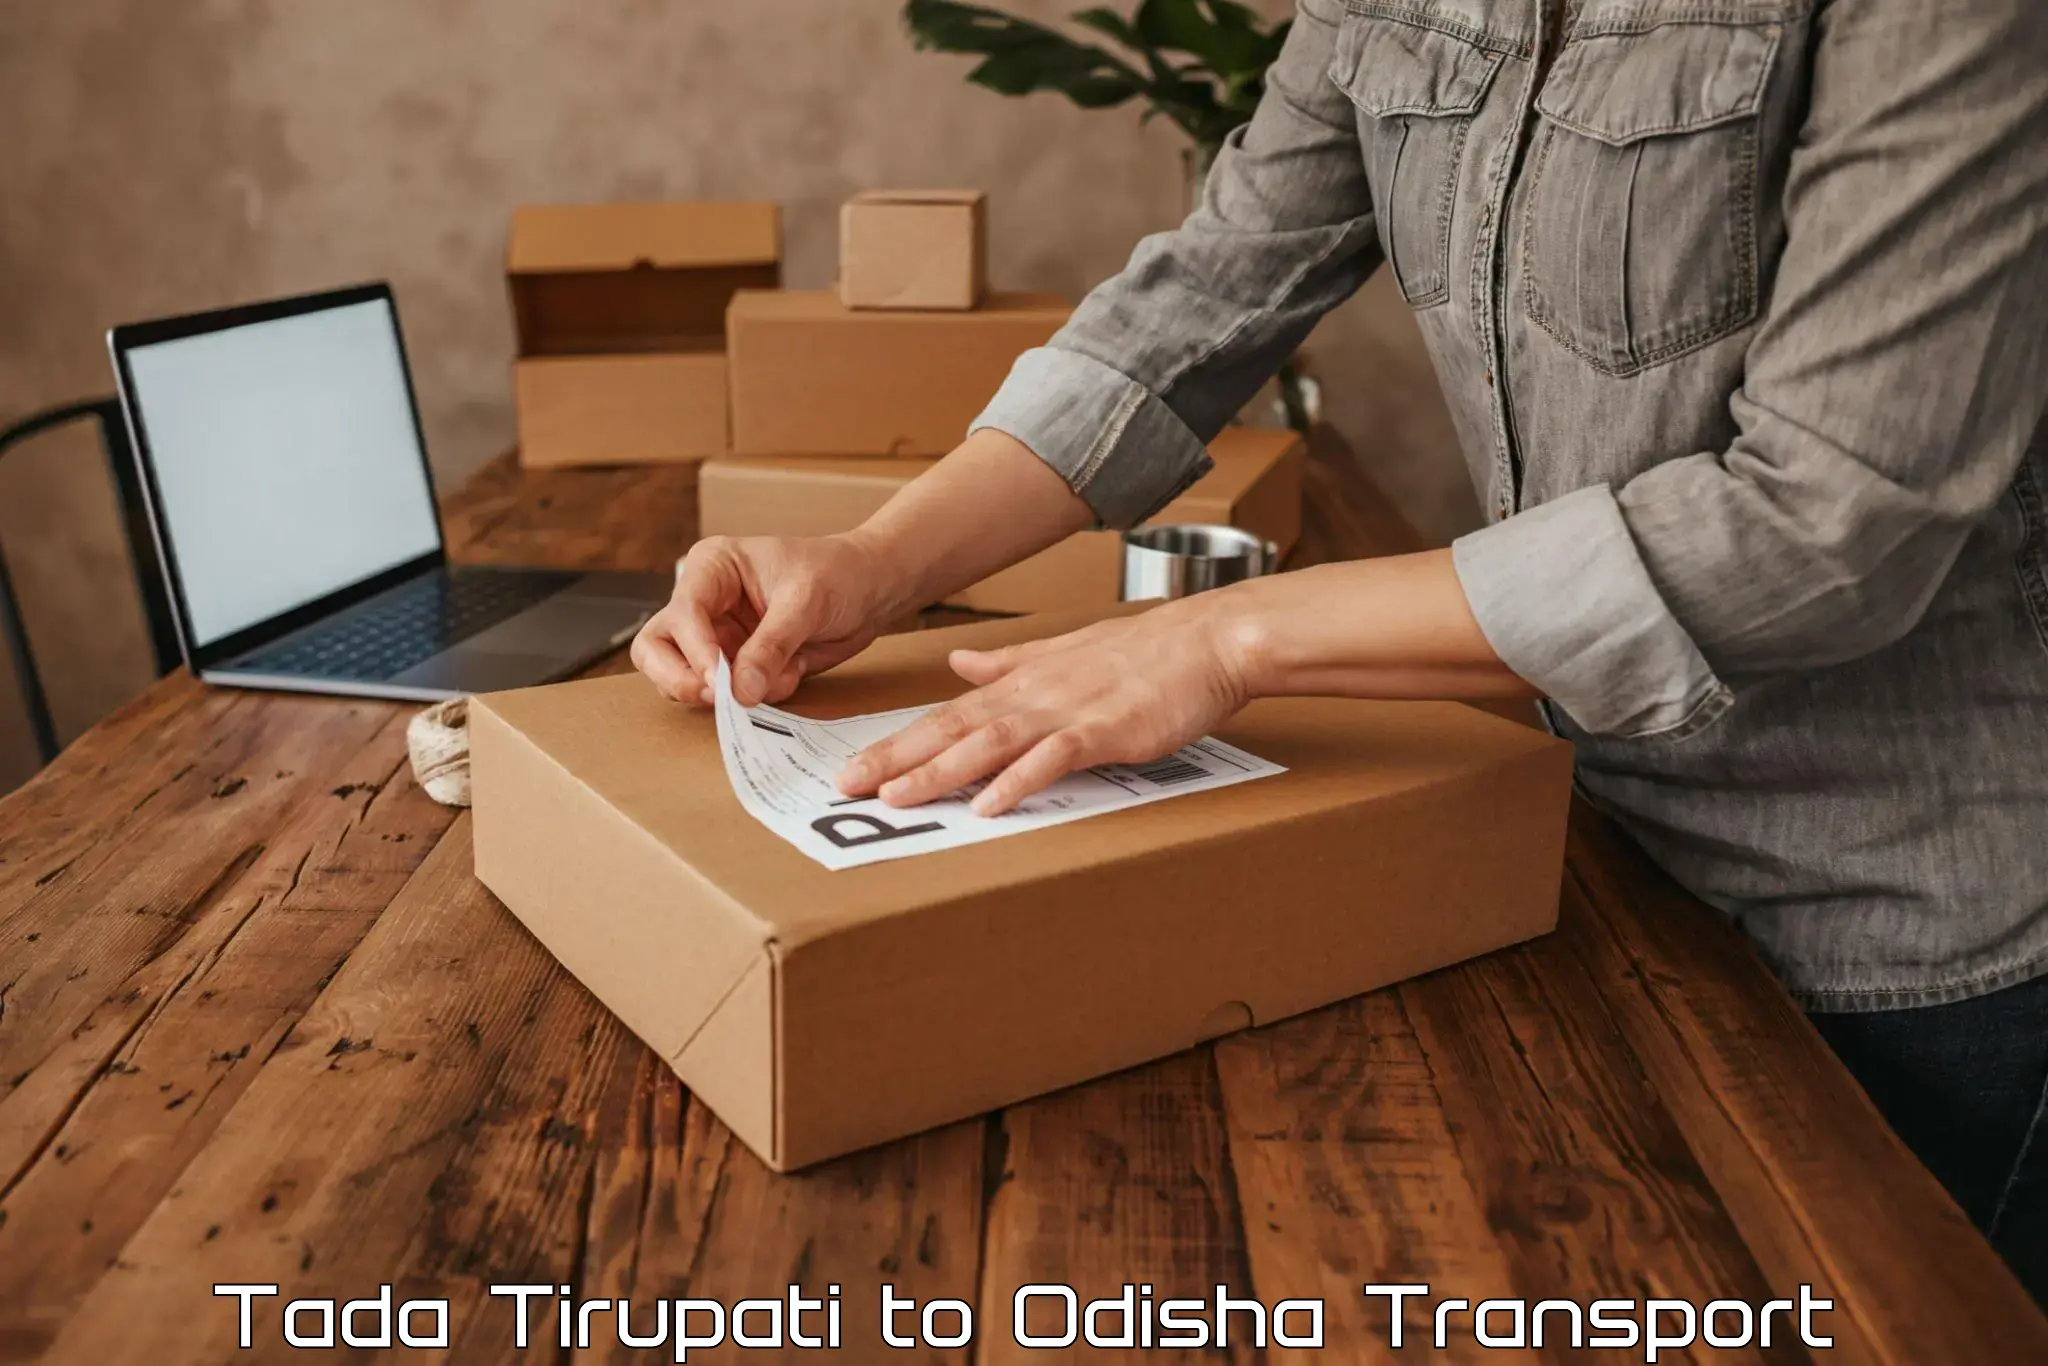 Nearest transport service Tada Tirupati to Odisha